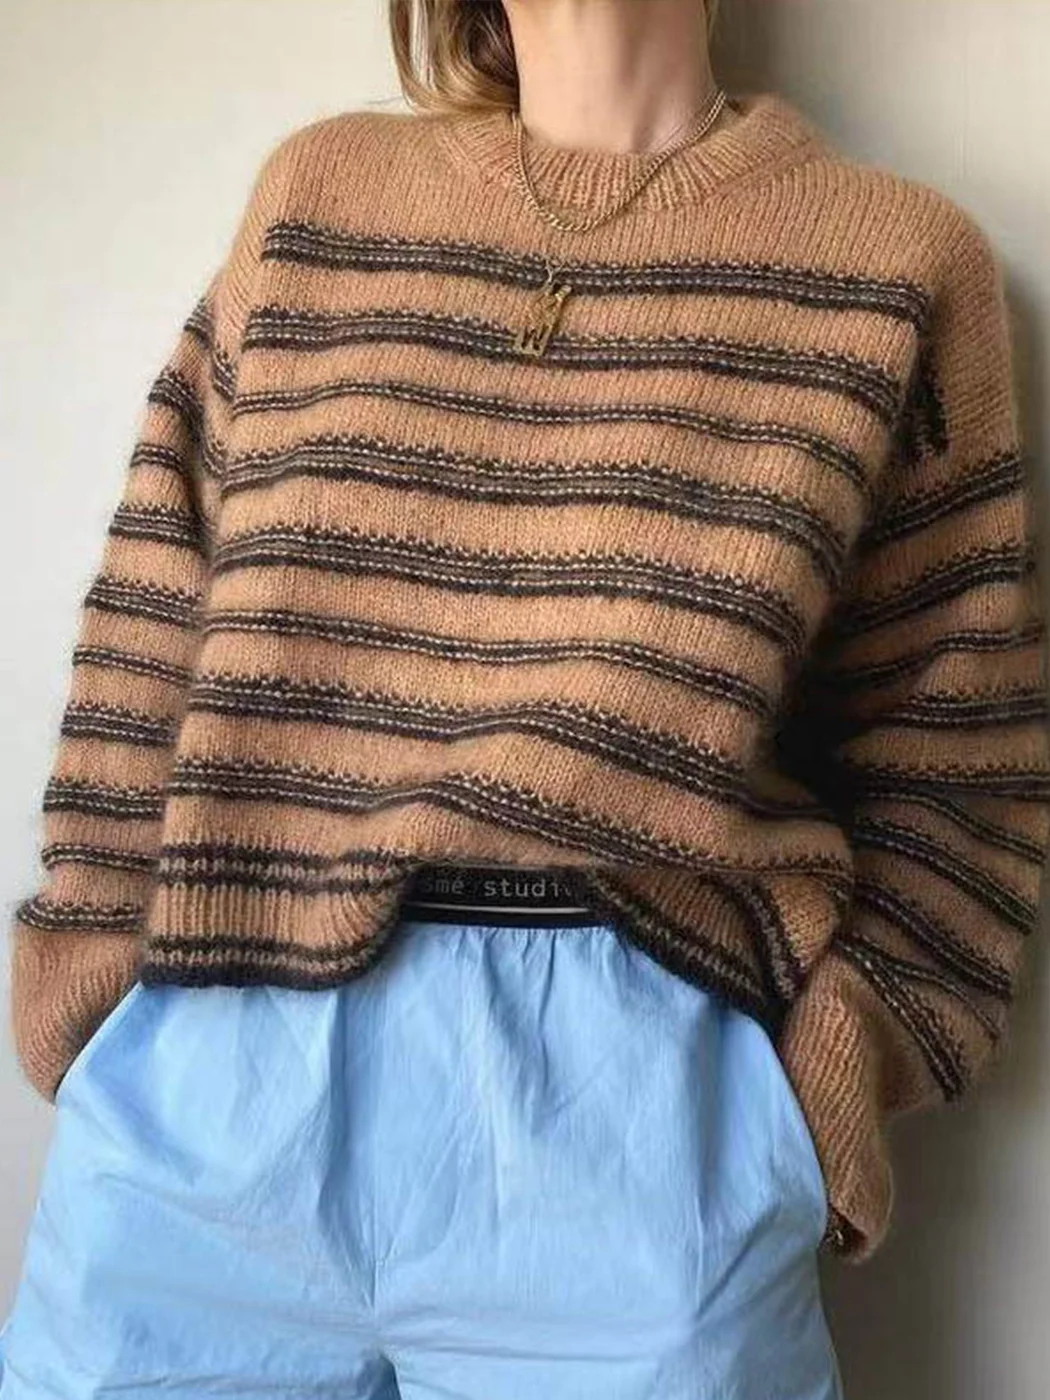 Vintage Striped Knitted Sweater / DarkAcademias /Darkacademias